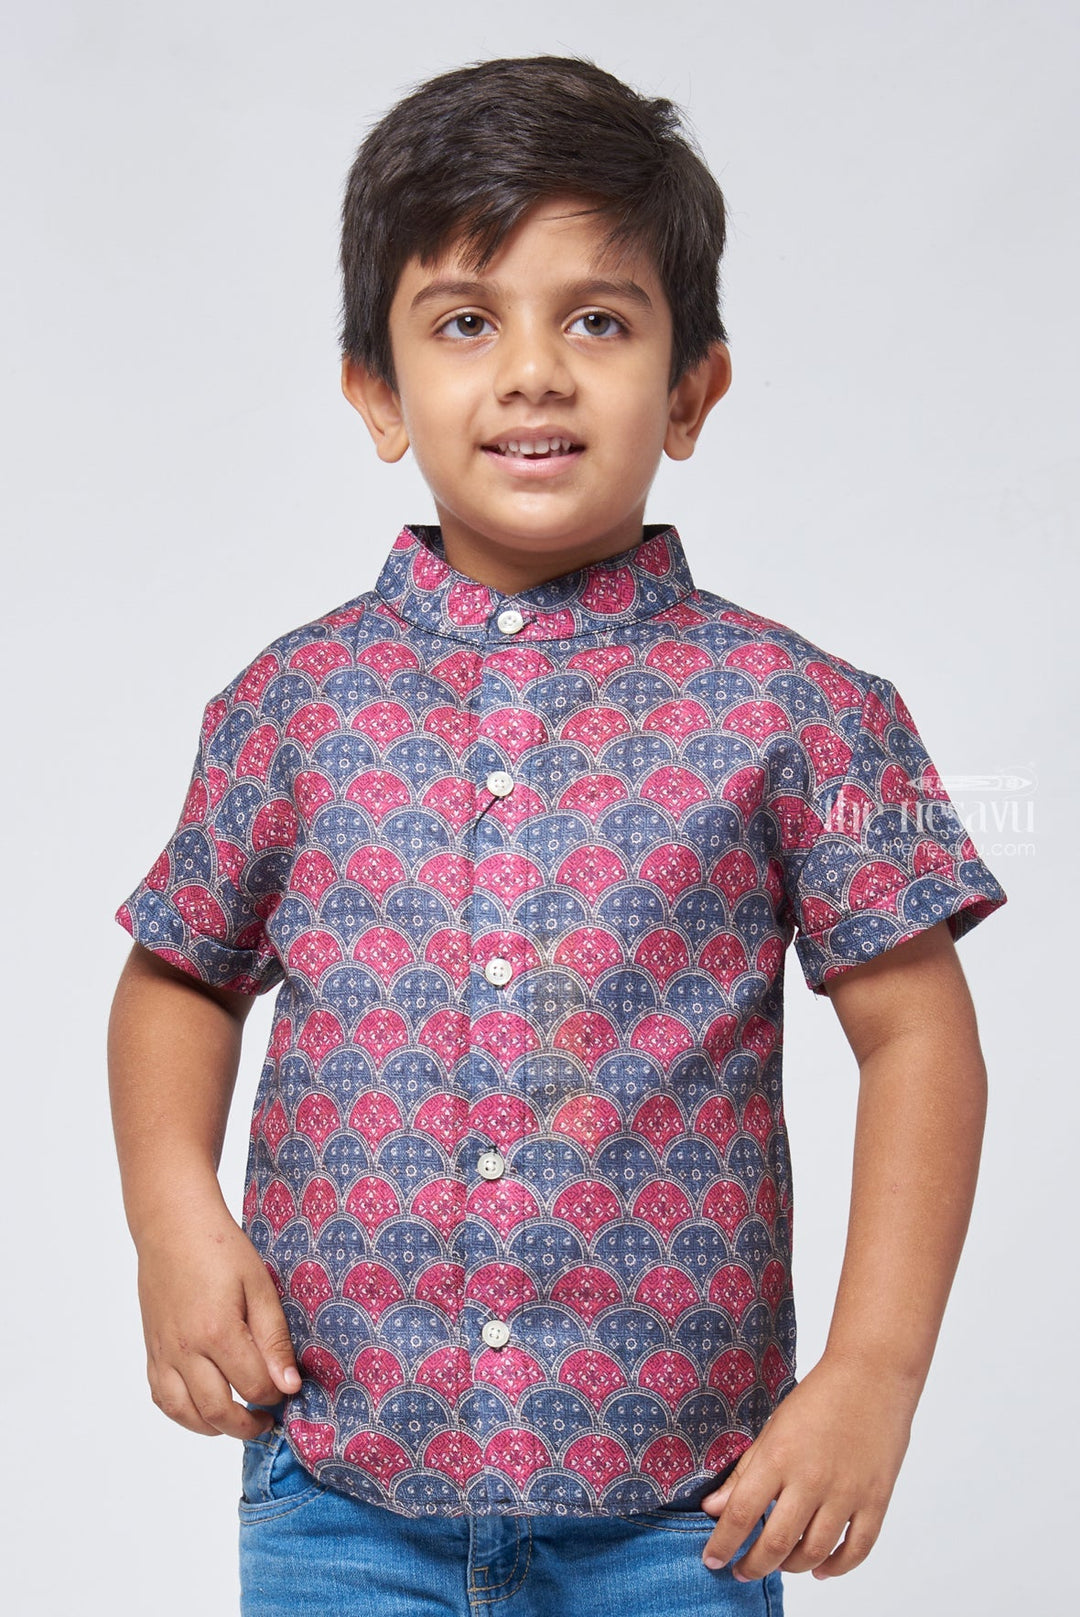 The Nesavu Boys Linen Shirt Dapper Design Boys Perfectly Tailored Shirt for Special Events Nesavu 14 (6M) / Red / Linen BS080B-14 Latest Boys Shirt Design | Buy Premium Boys Shirt | The Nesavu